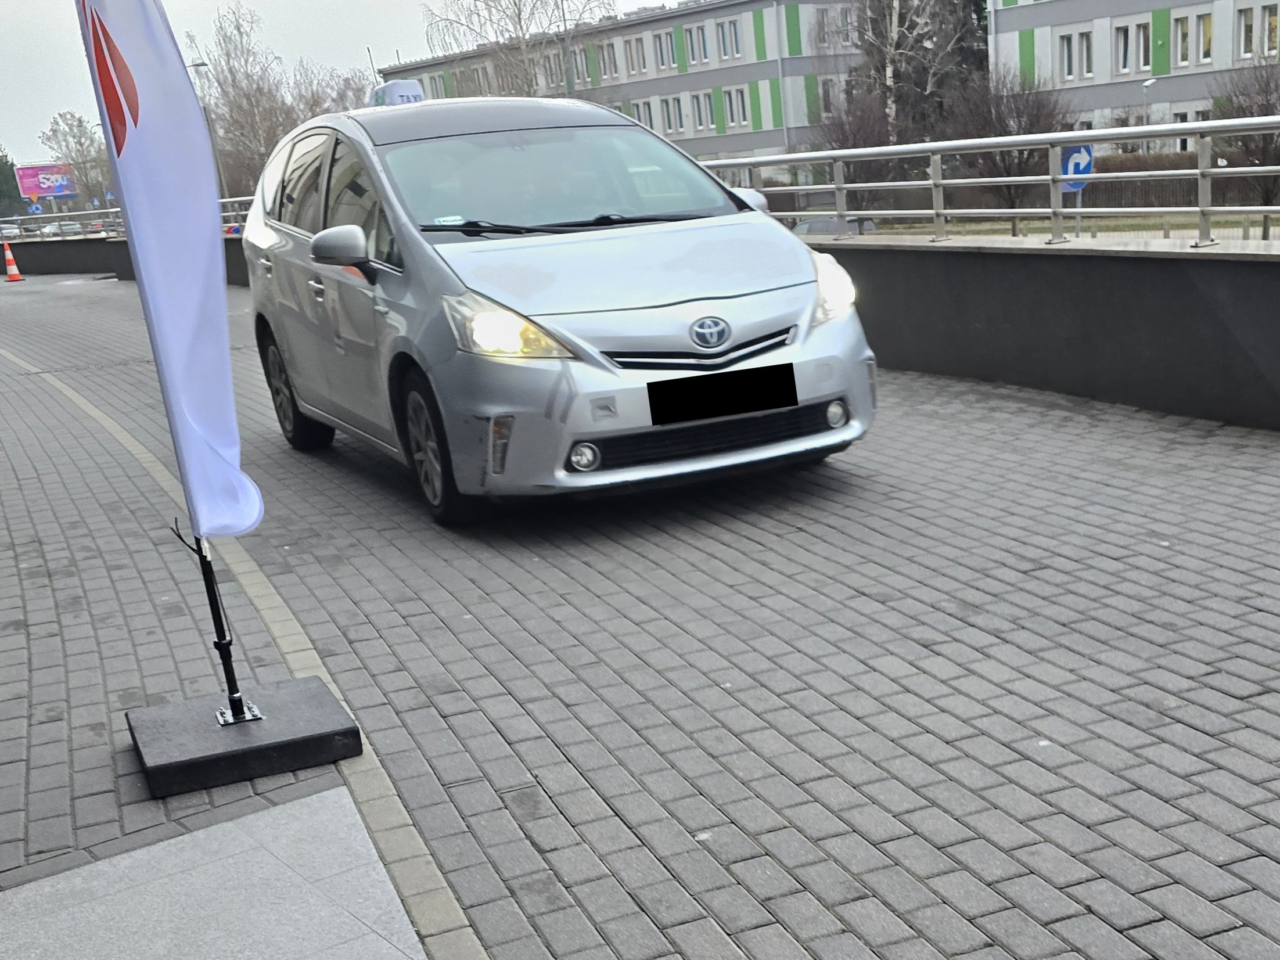 Szary samochód marki Toyota, taksówka UberX Share, stoi na bruku obok białej flagi z logotypem.